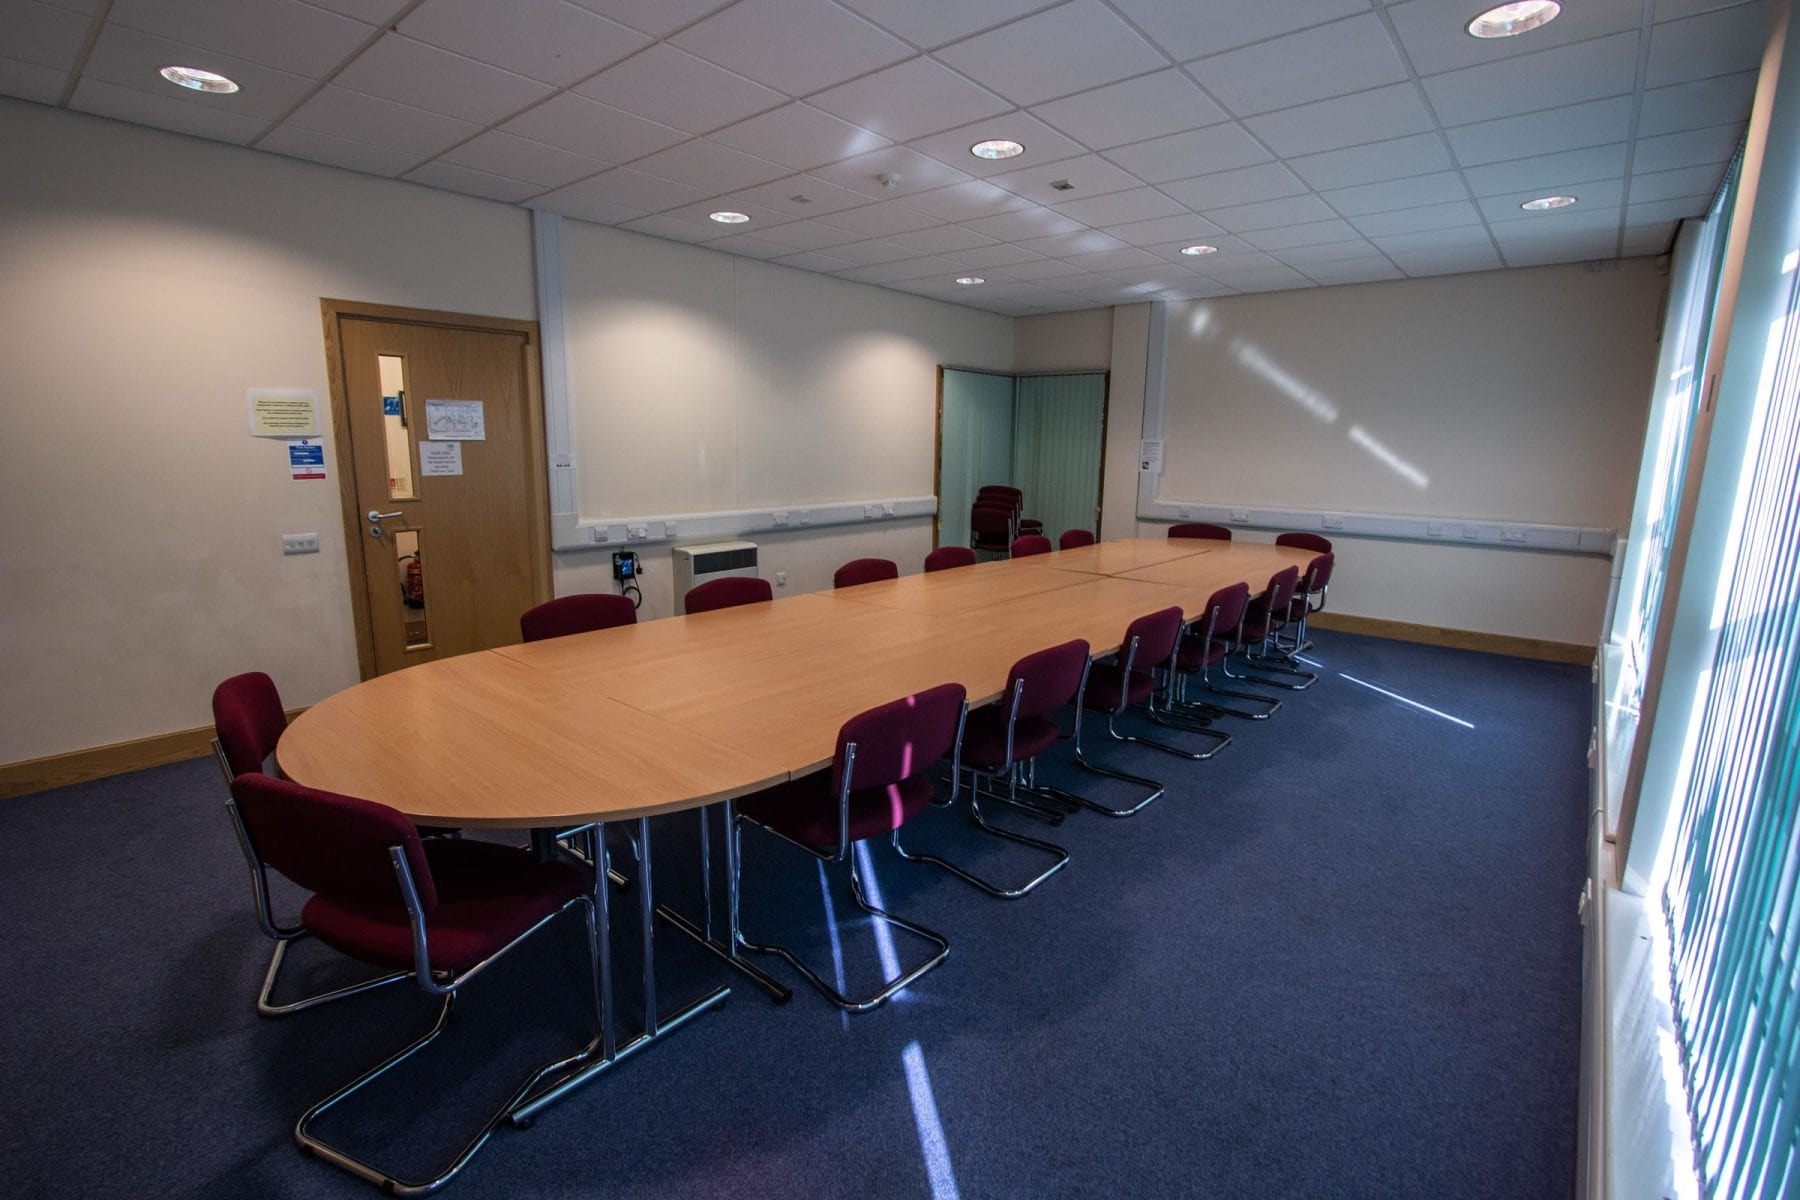 Meeting room for hire in Elloughton-cum-Brough